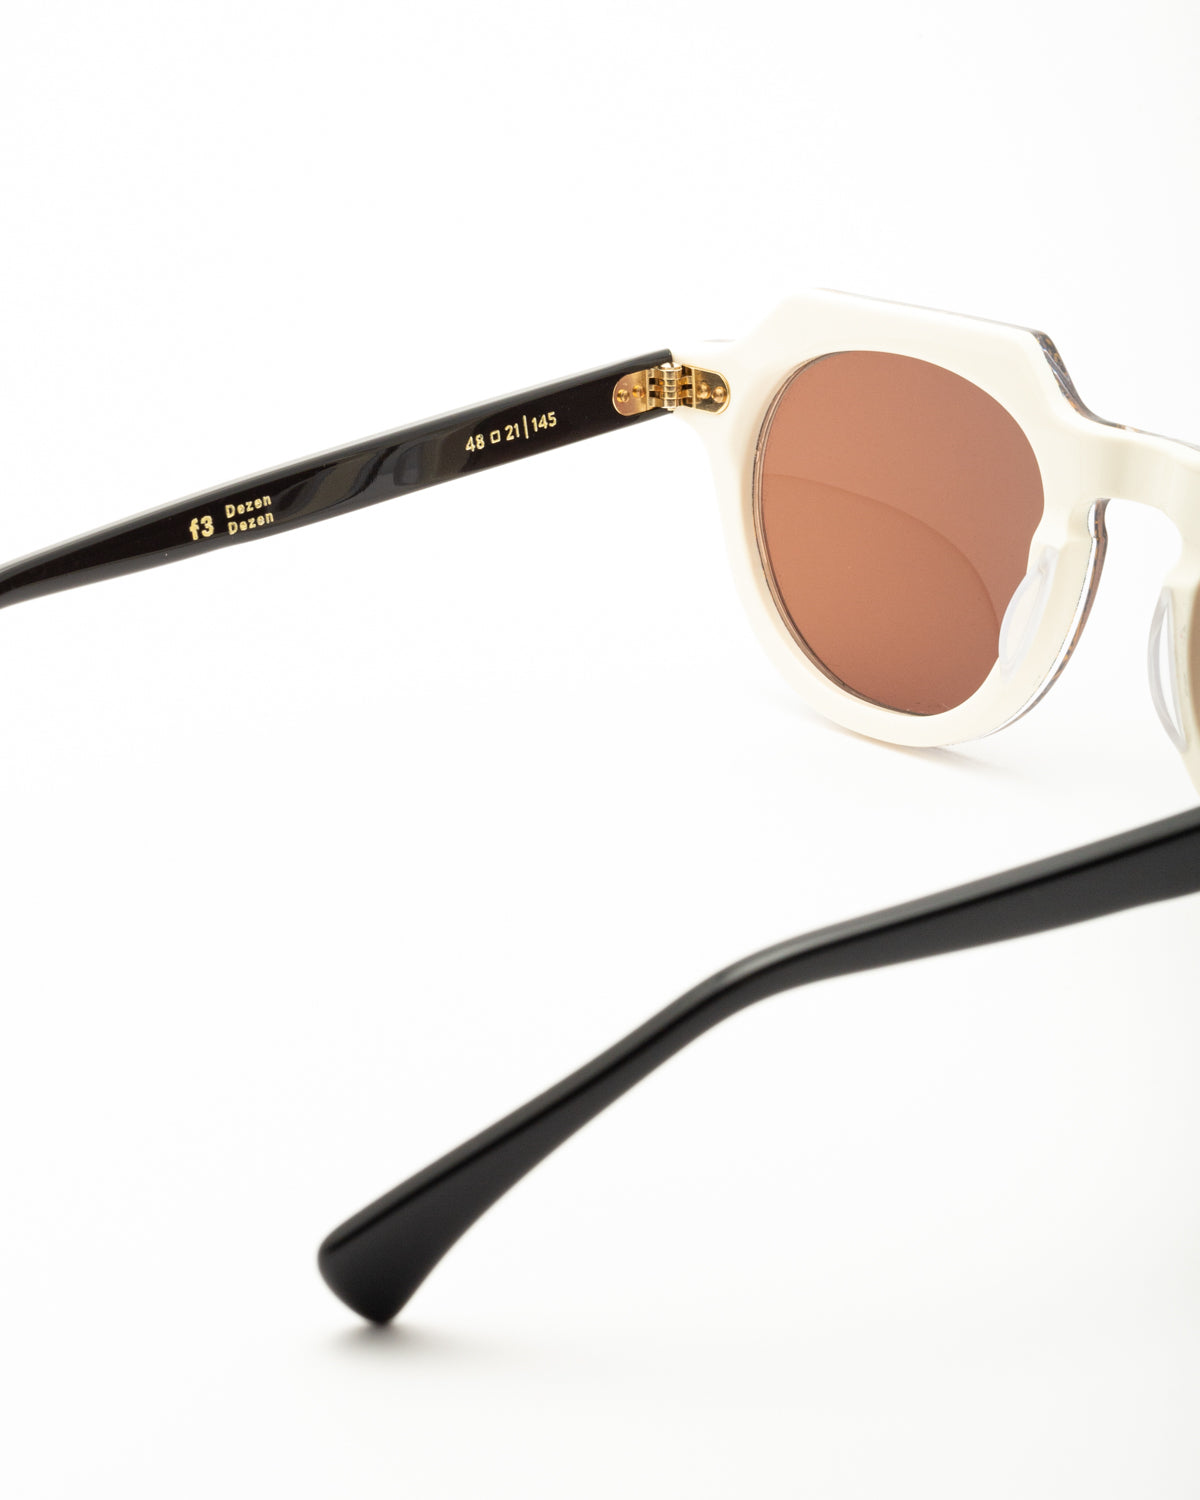 Farben F3 - 001 sunglasses